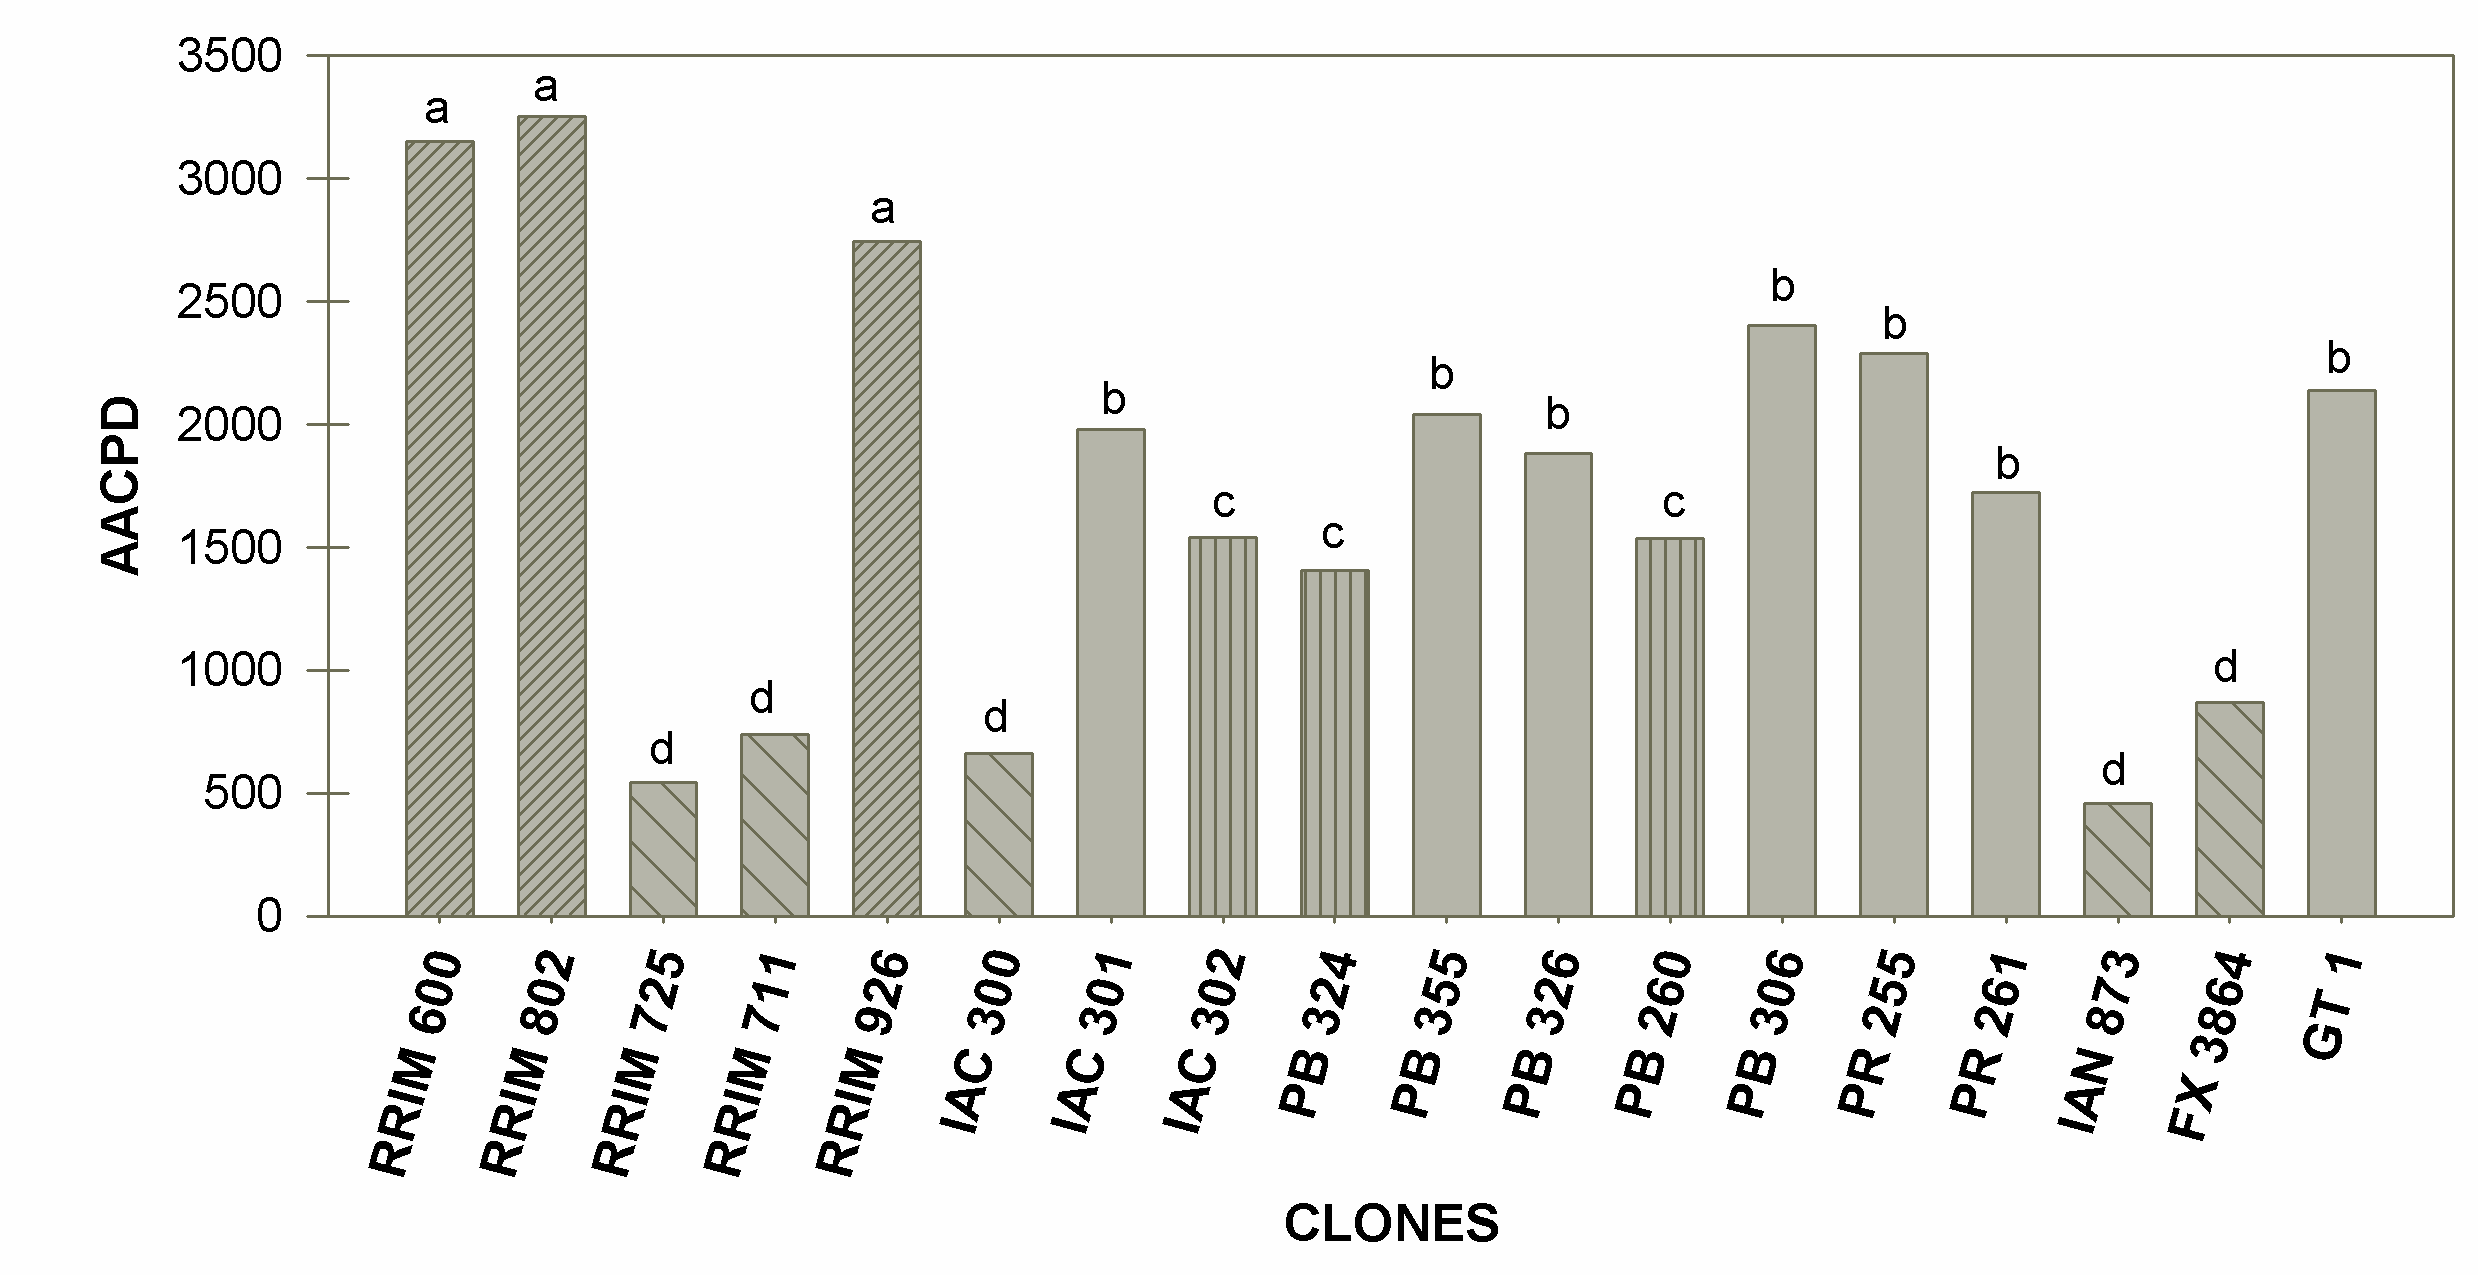 A partir do agrupamento dos clones, foi realizada a correlação dos mesmos com as variáveis meteorológicas de forma a se obter a relação entre severidade e clima (Tabela 1).